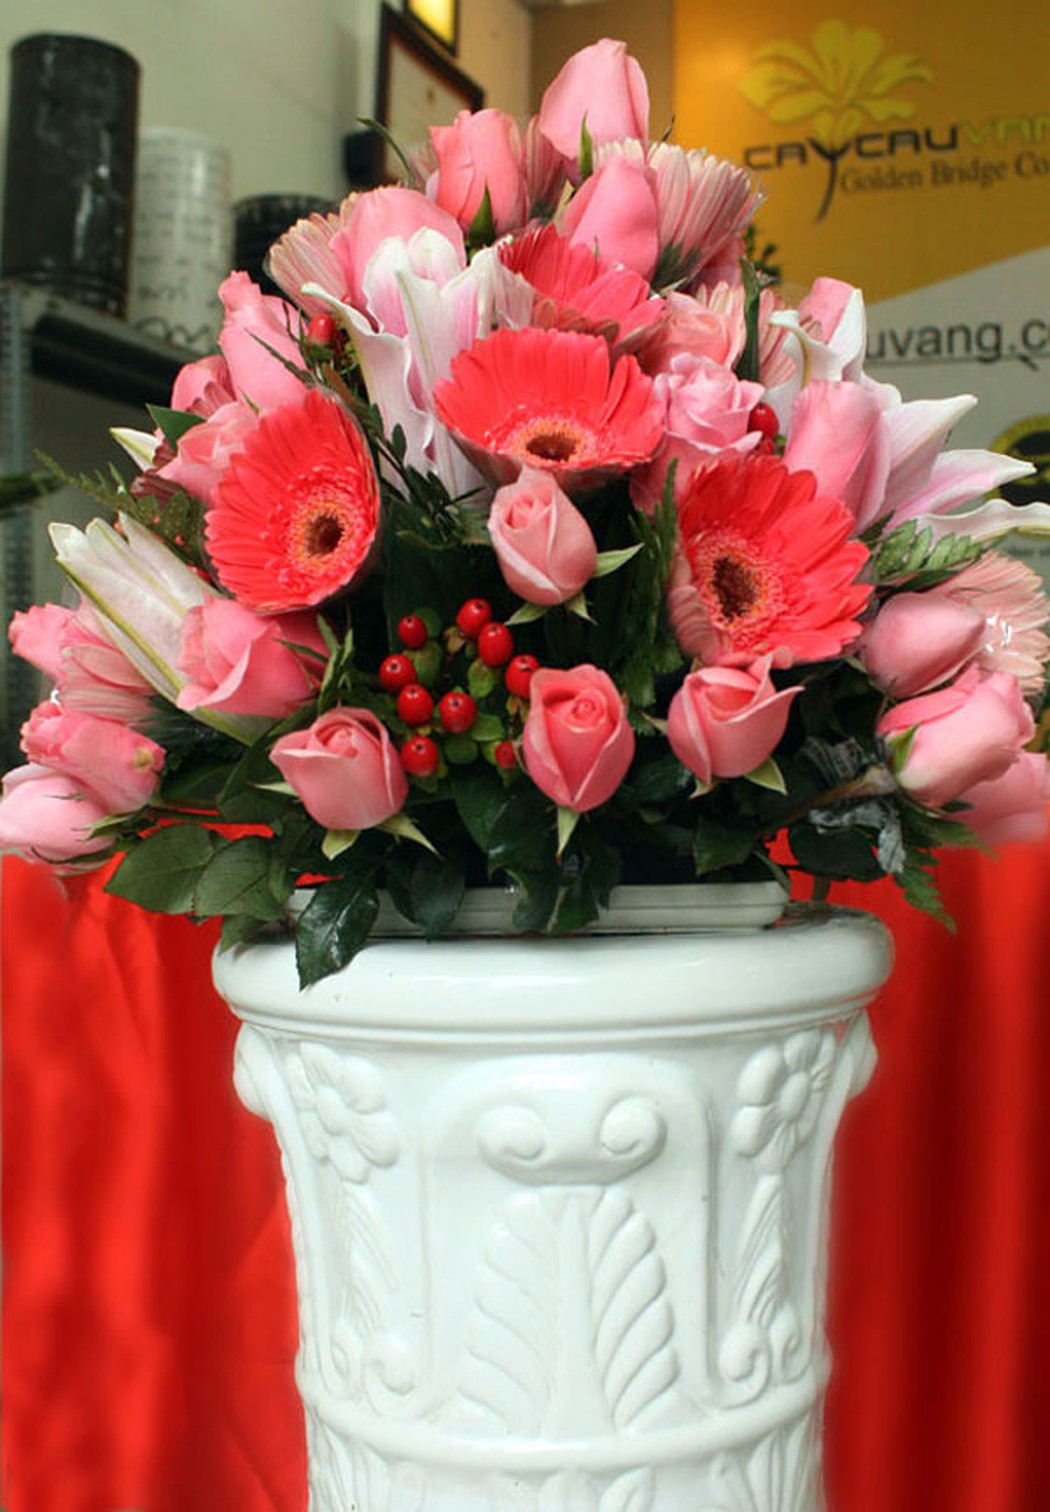 Hoa đồng tiền hồng nhạt cắm trong bó hoa cực đẹp